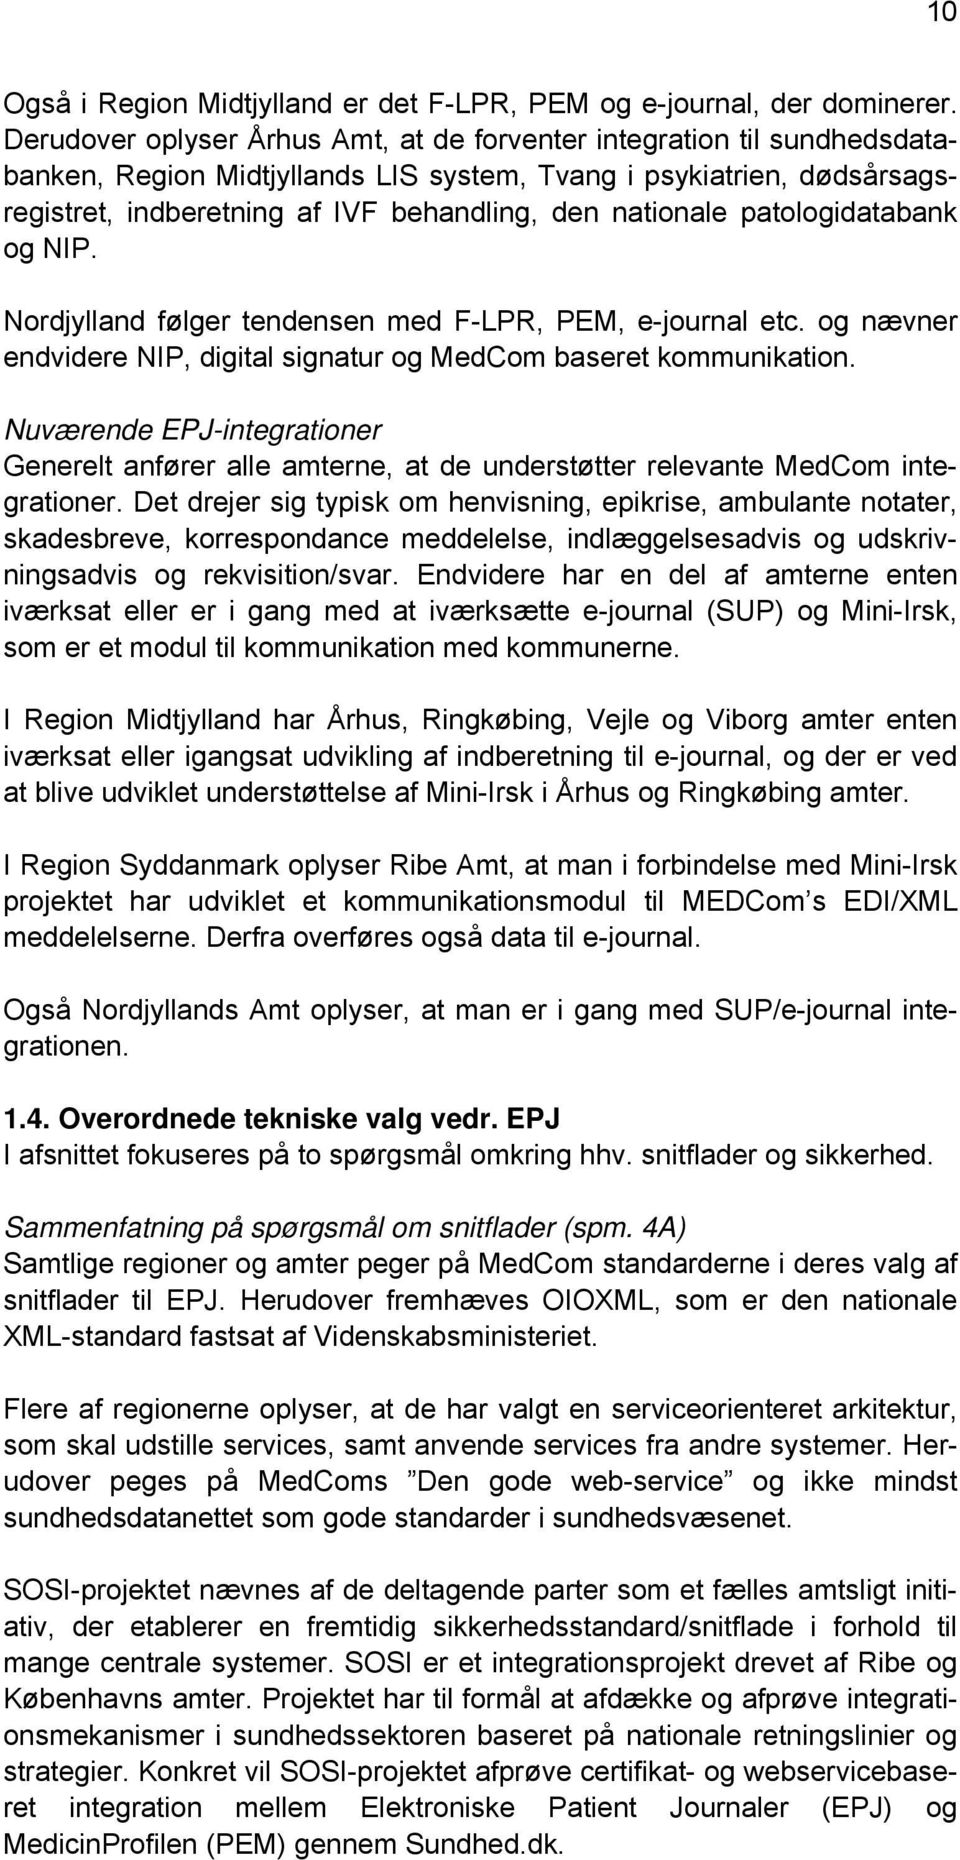 nationale patologidatabank og NIP. Nordjylland følger tendensen med F-LPR, PEM, e-journal etc. og nævner endvidere NIP, digital signatur og MedCom baseret kommunikation.